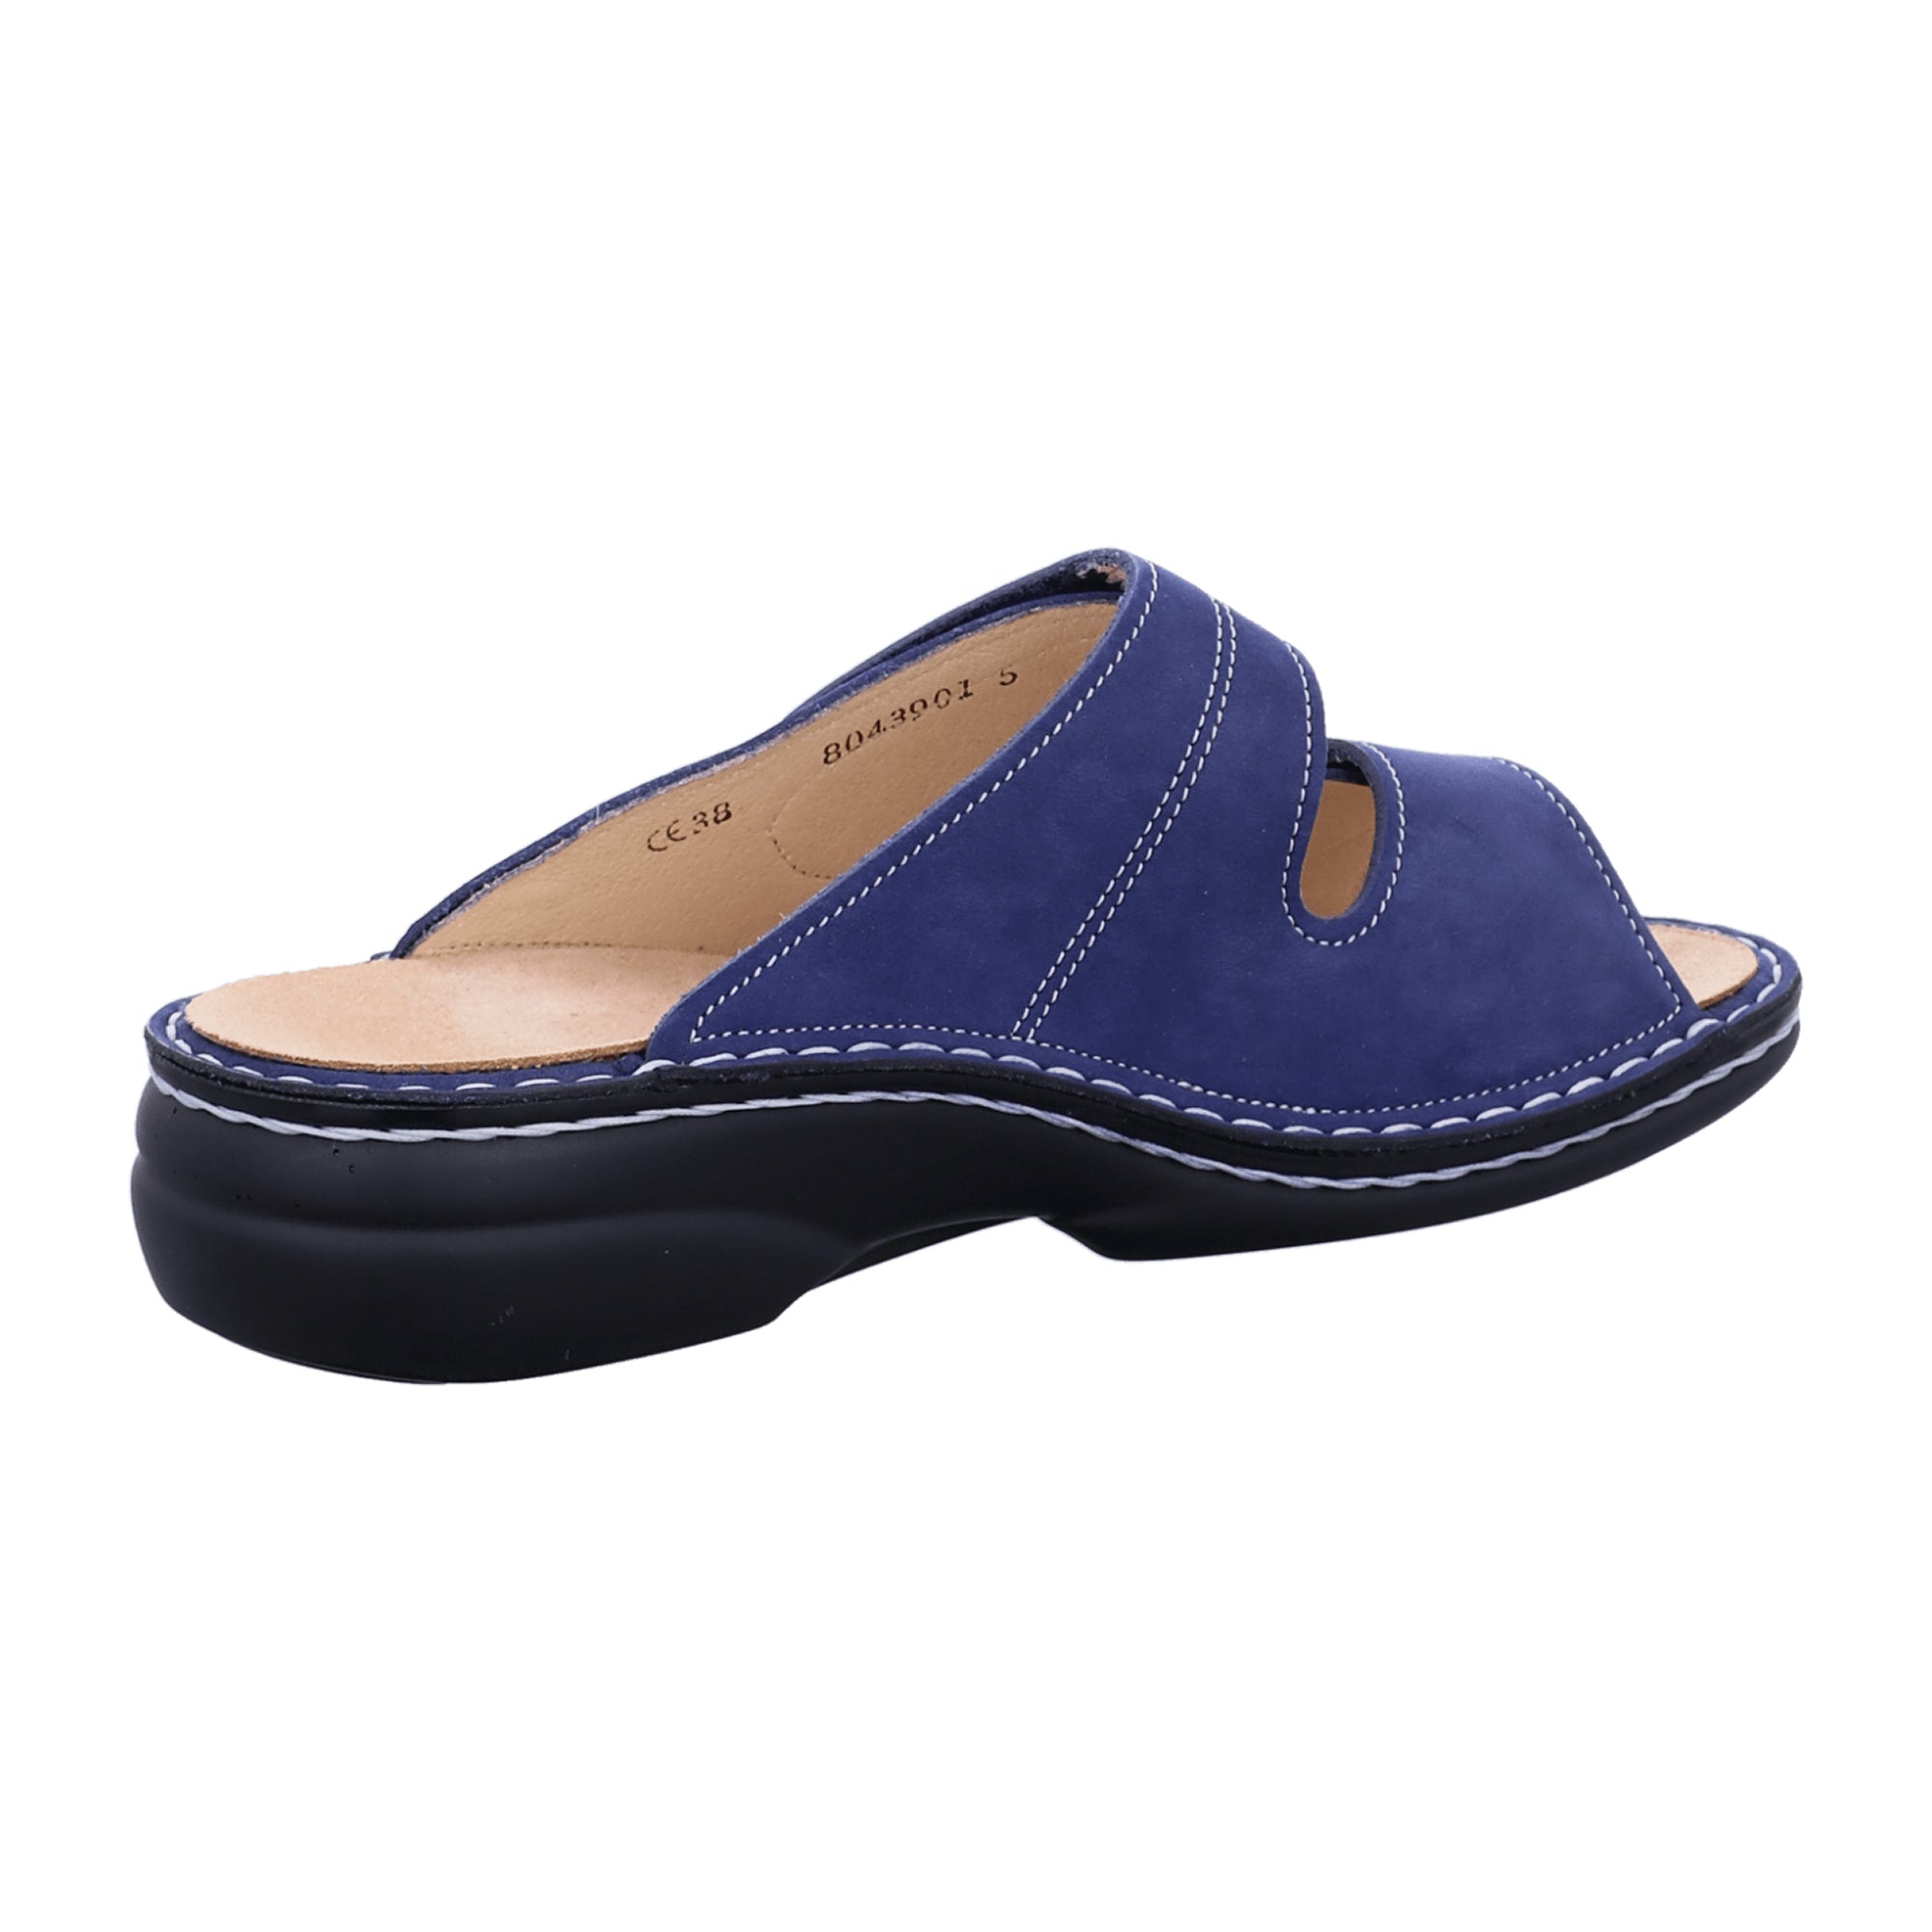 Finn Comfort Sansibar Women's Comfort Slides - Blue Nubuck Leather Sandals with Adjustable Straps